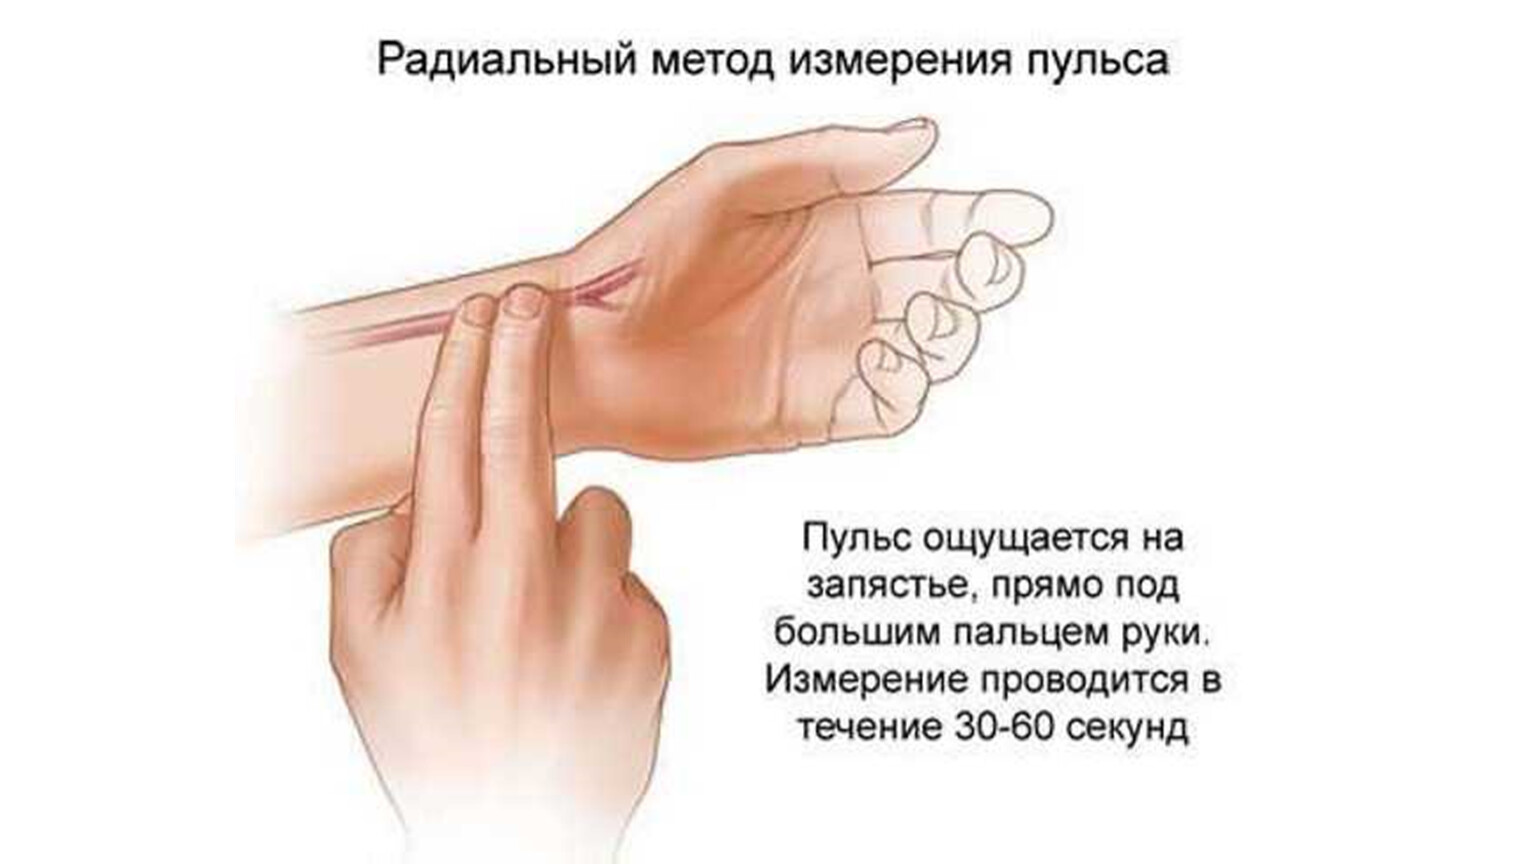 Пульс на запястье руки. Радиальный метод измерения пульса. Подсчет пульса на лучевой артерии. Измерение ЧСС на руке. Правильное измерение пульса на руке.